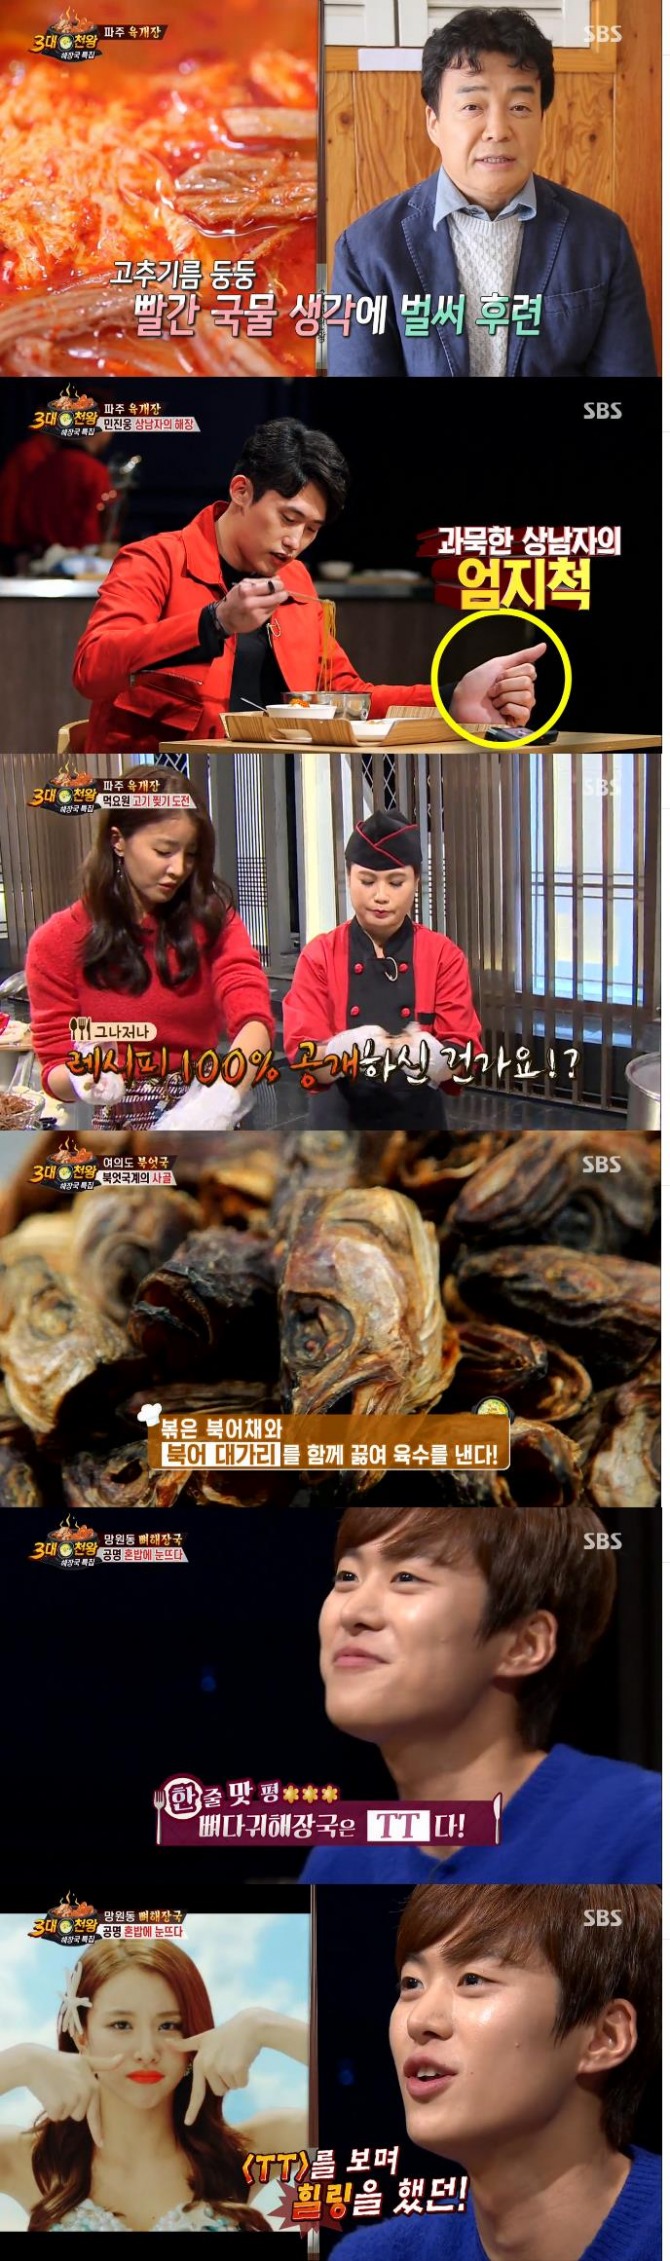 10일 밤 방송된 SBS '백종원의 3대천왕에서는 민진웅과 공명이 게스트로 출연한 가운데 해장국 특집이 그려졌다./사진=SBS 방송 캡처